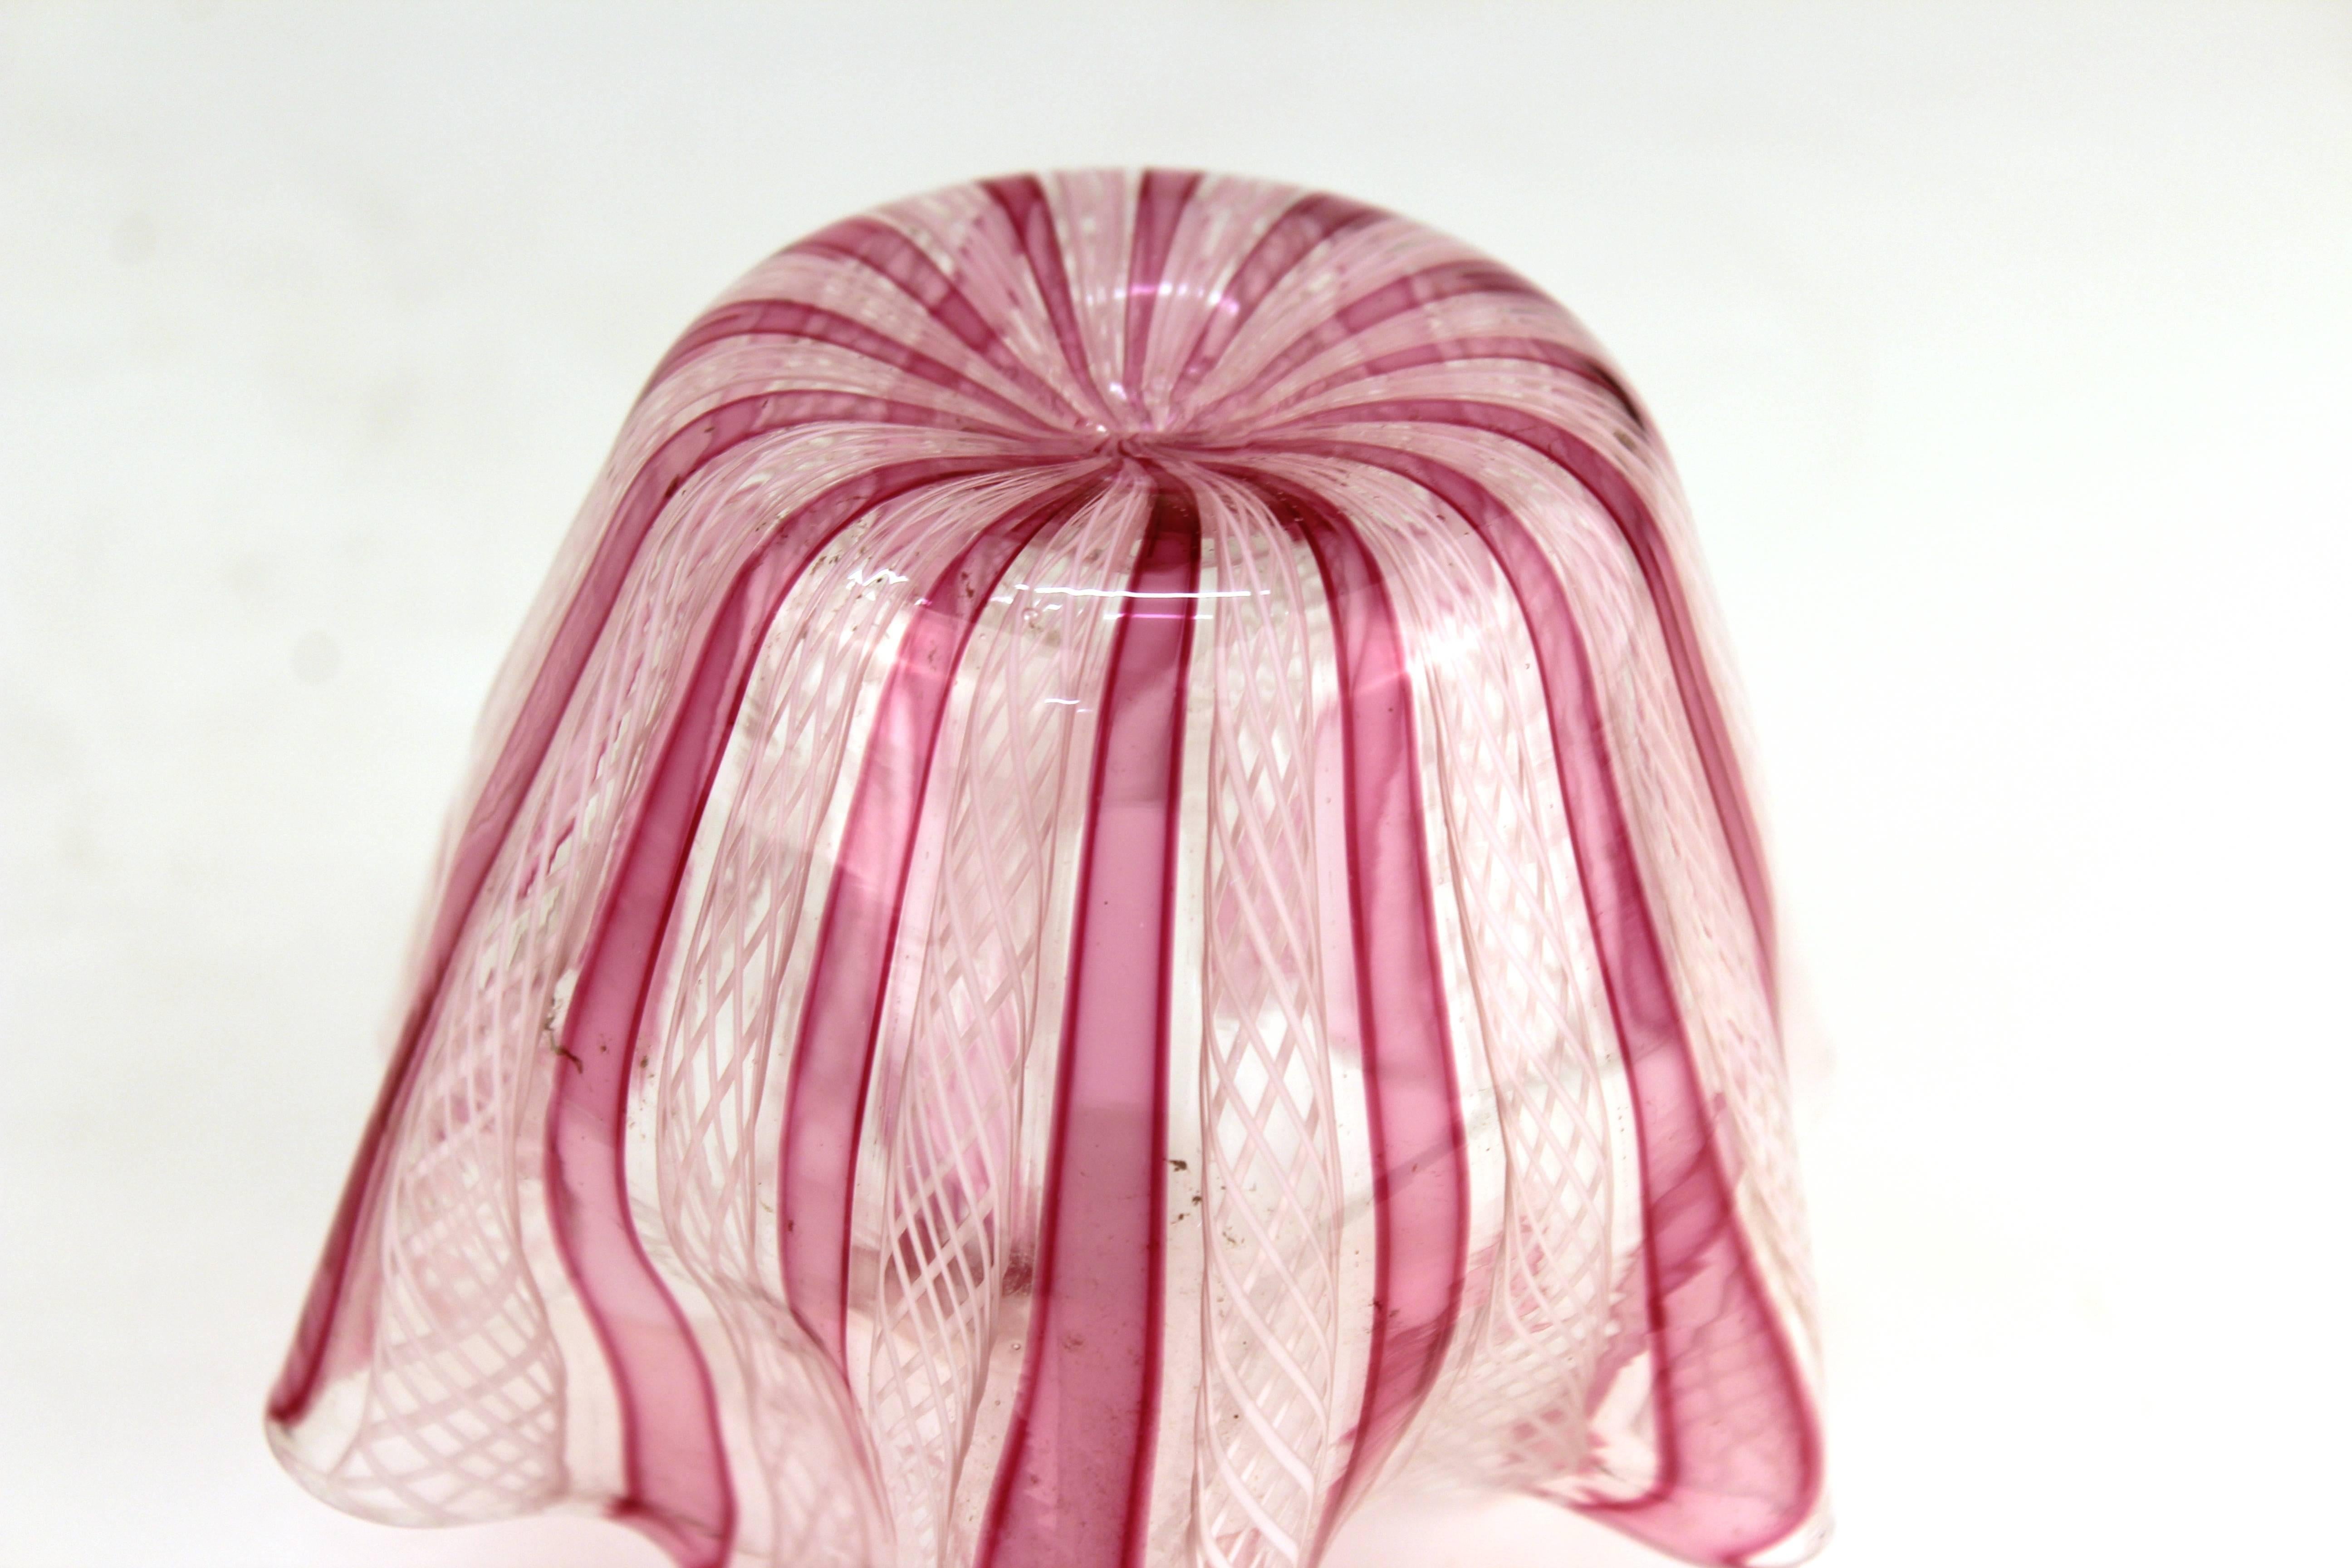 Italian Midcentury Murano Glass Handkerchief Vase in Pink and White